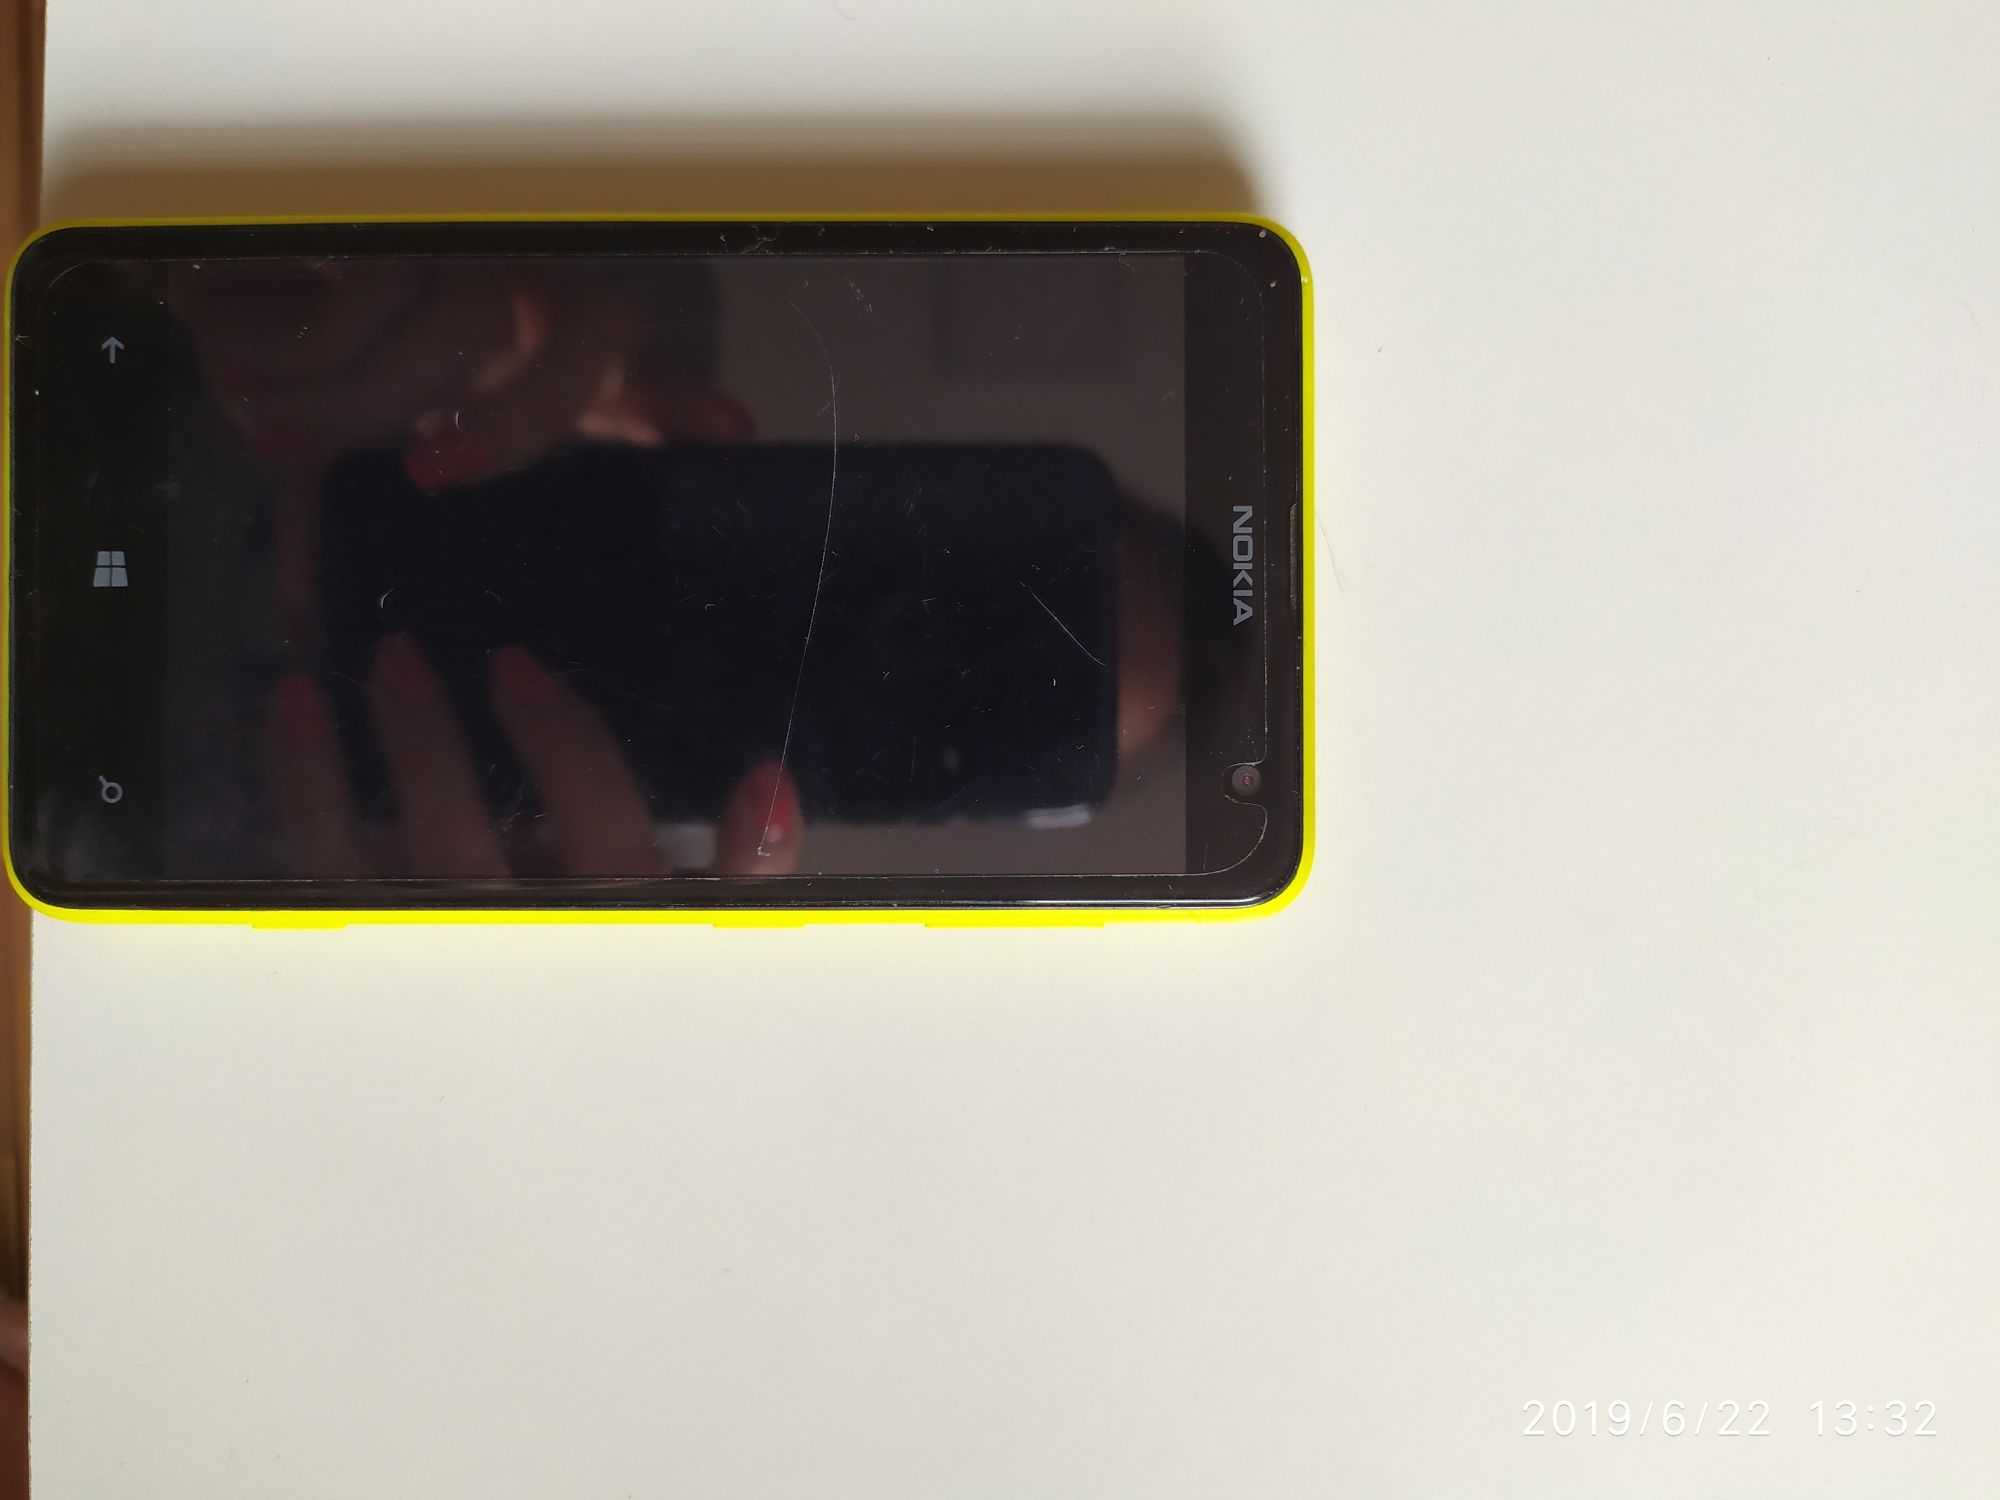 Nokia Lumia 625 nokia